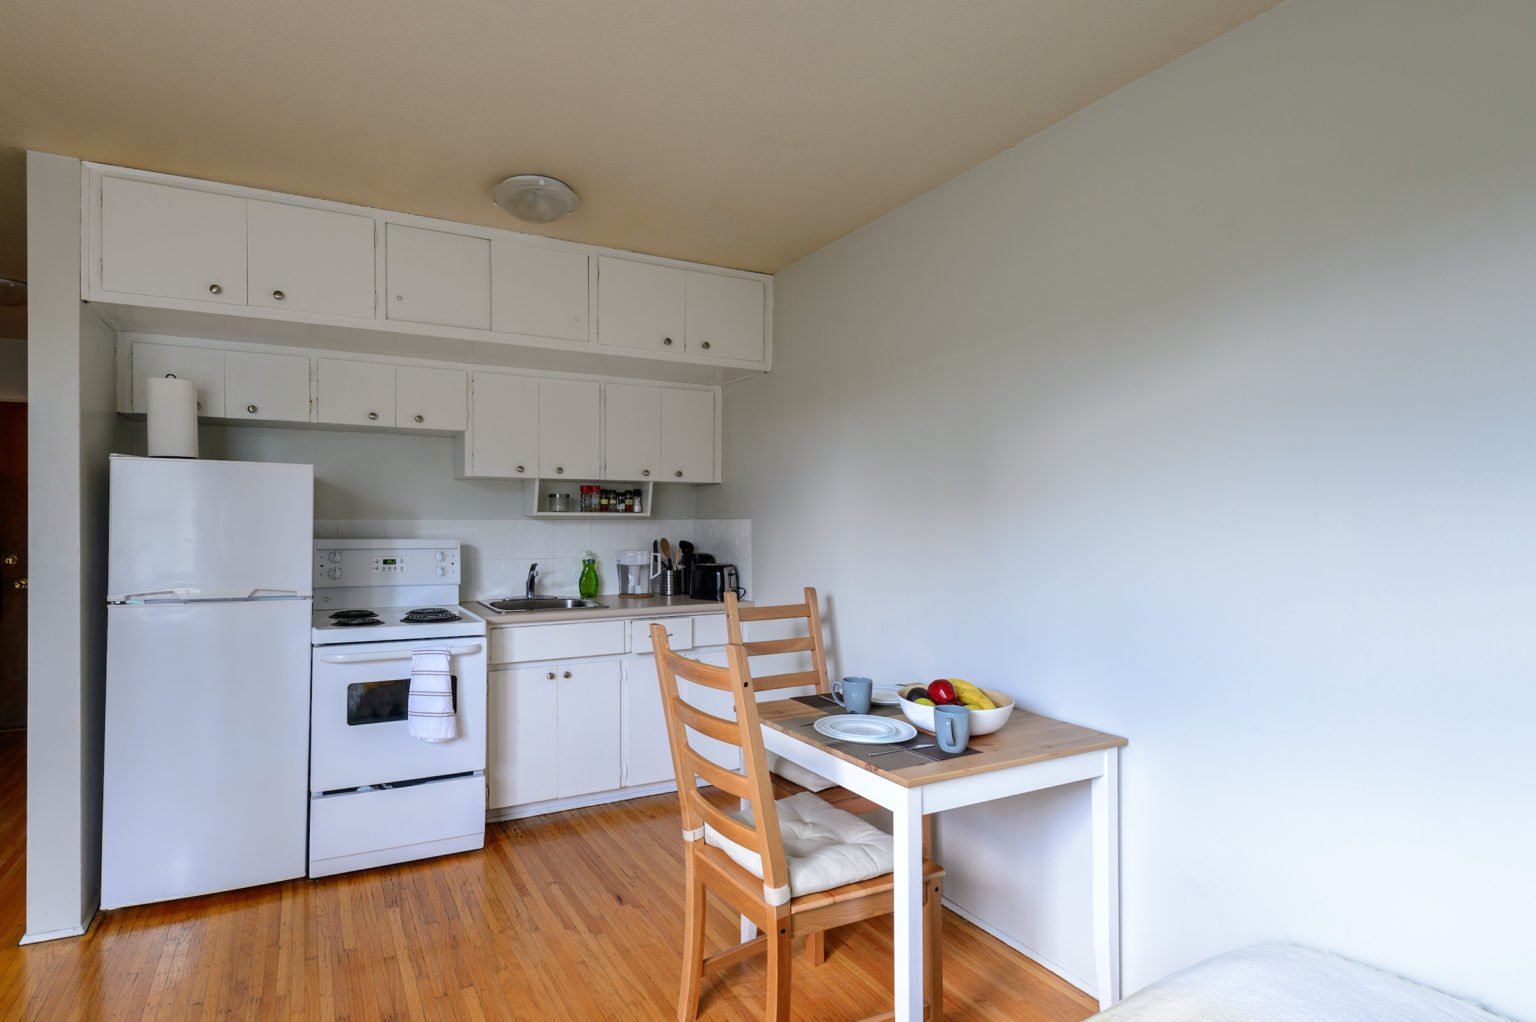 یک آپارتمانی در استکهلم که همه امکانات را در یک اتاق دارد